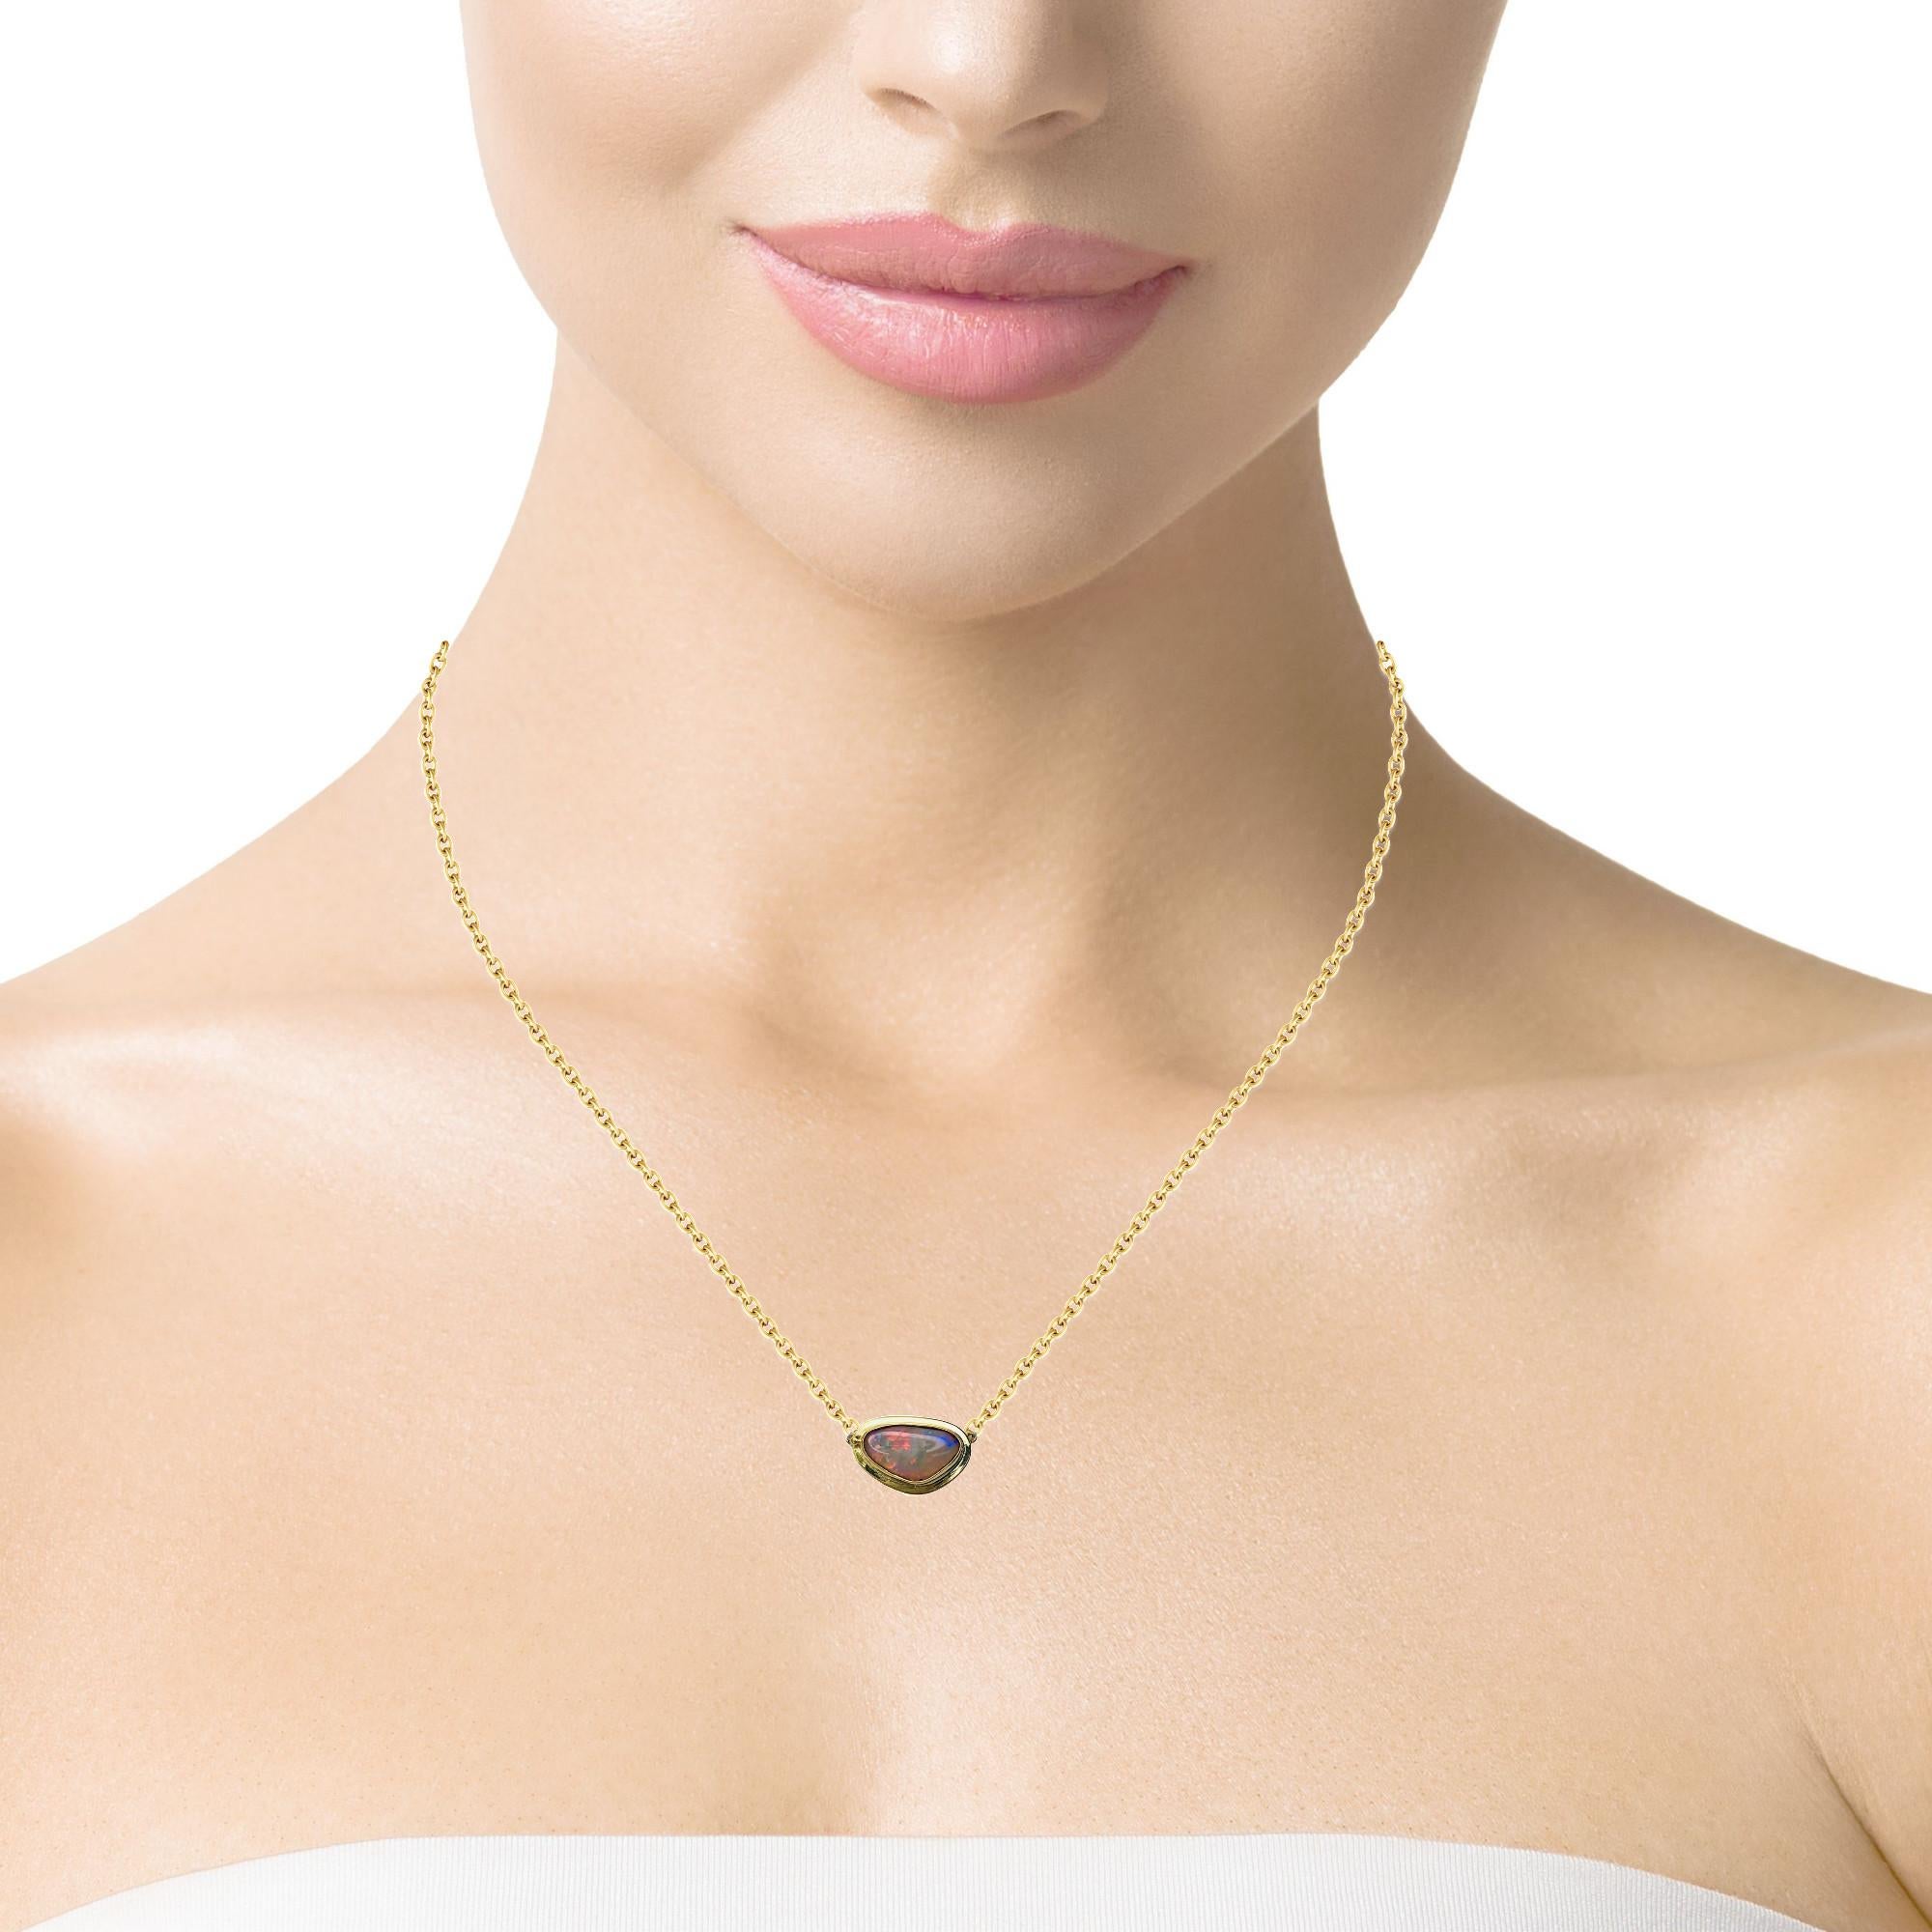 Bezel Set Freeform Australian Opal Necklace in 18k Yellow Gold   2